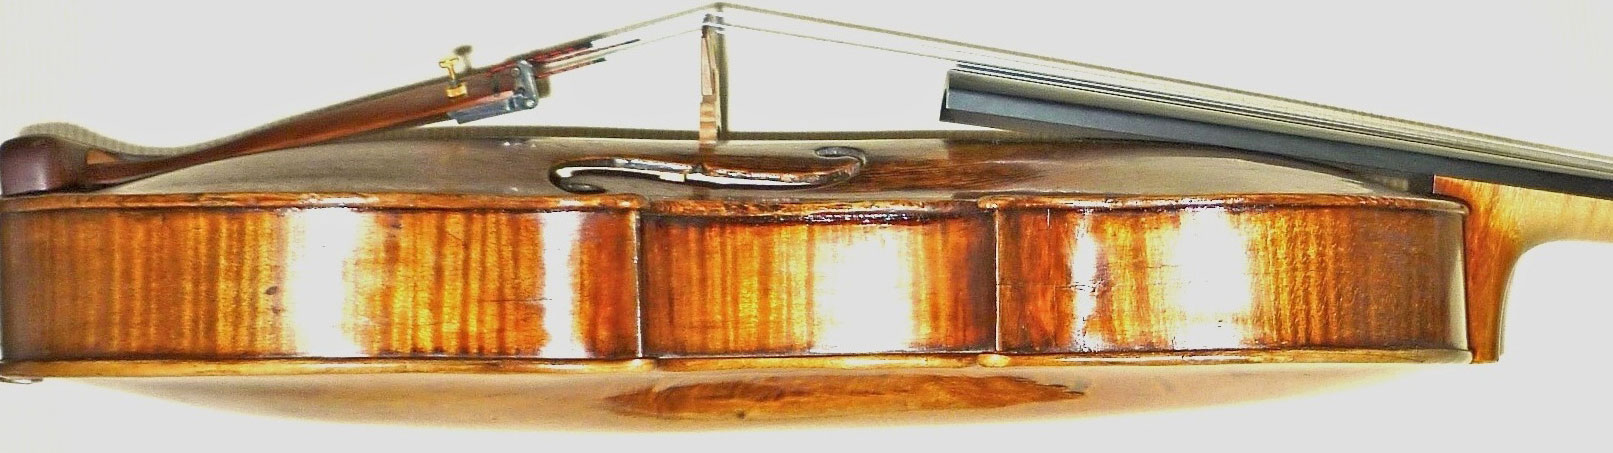 Bild einer Geige von der Seite